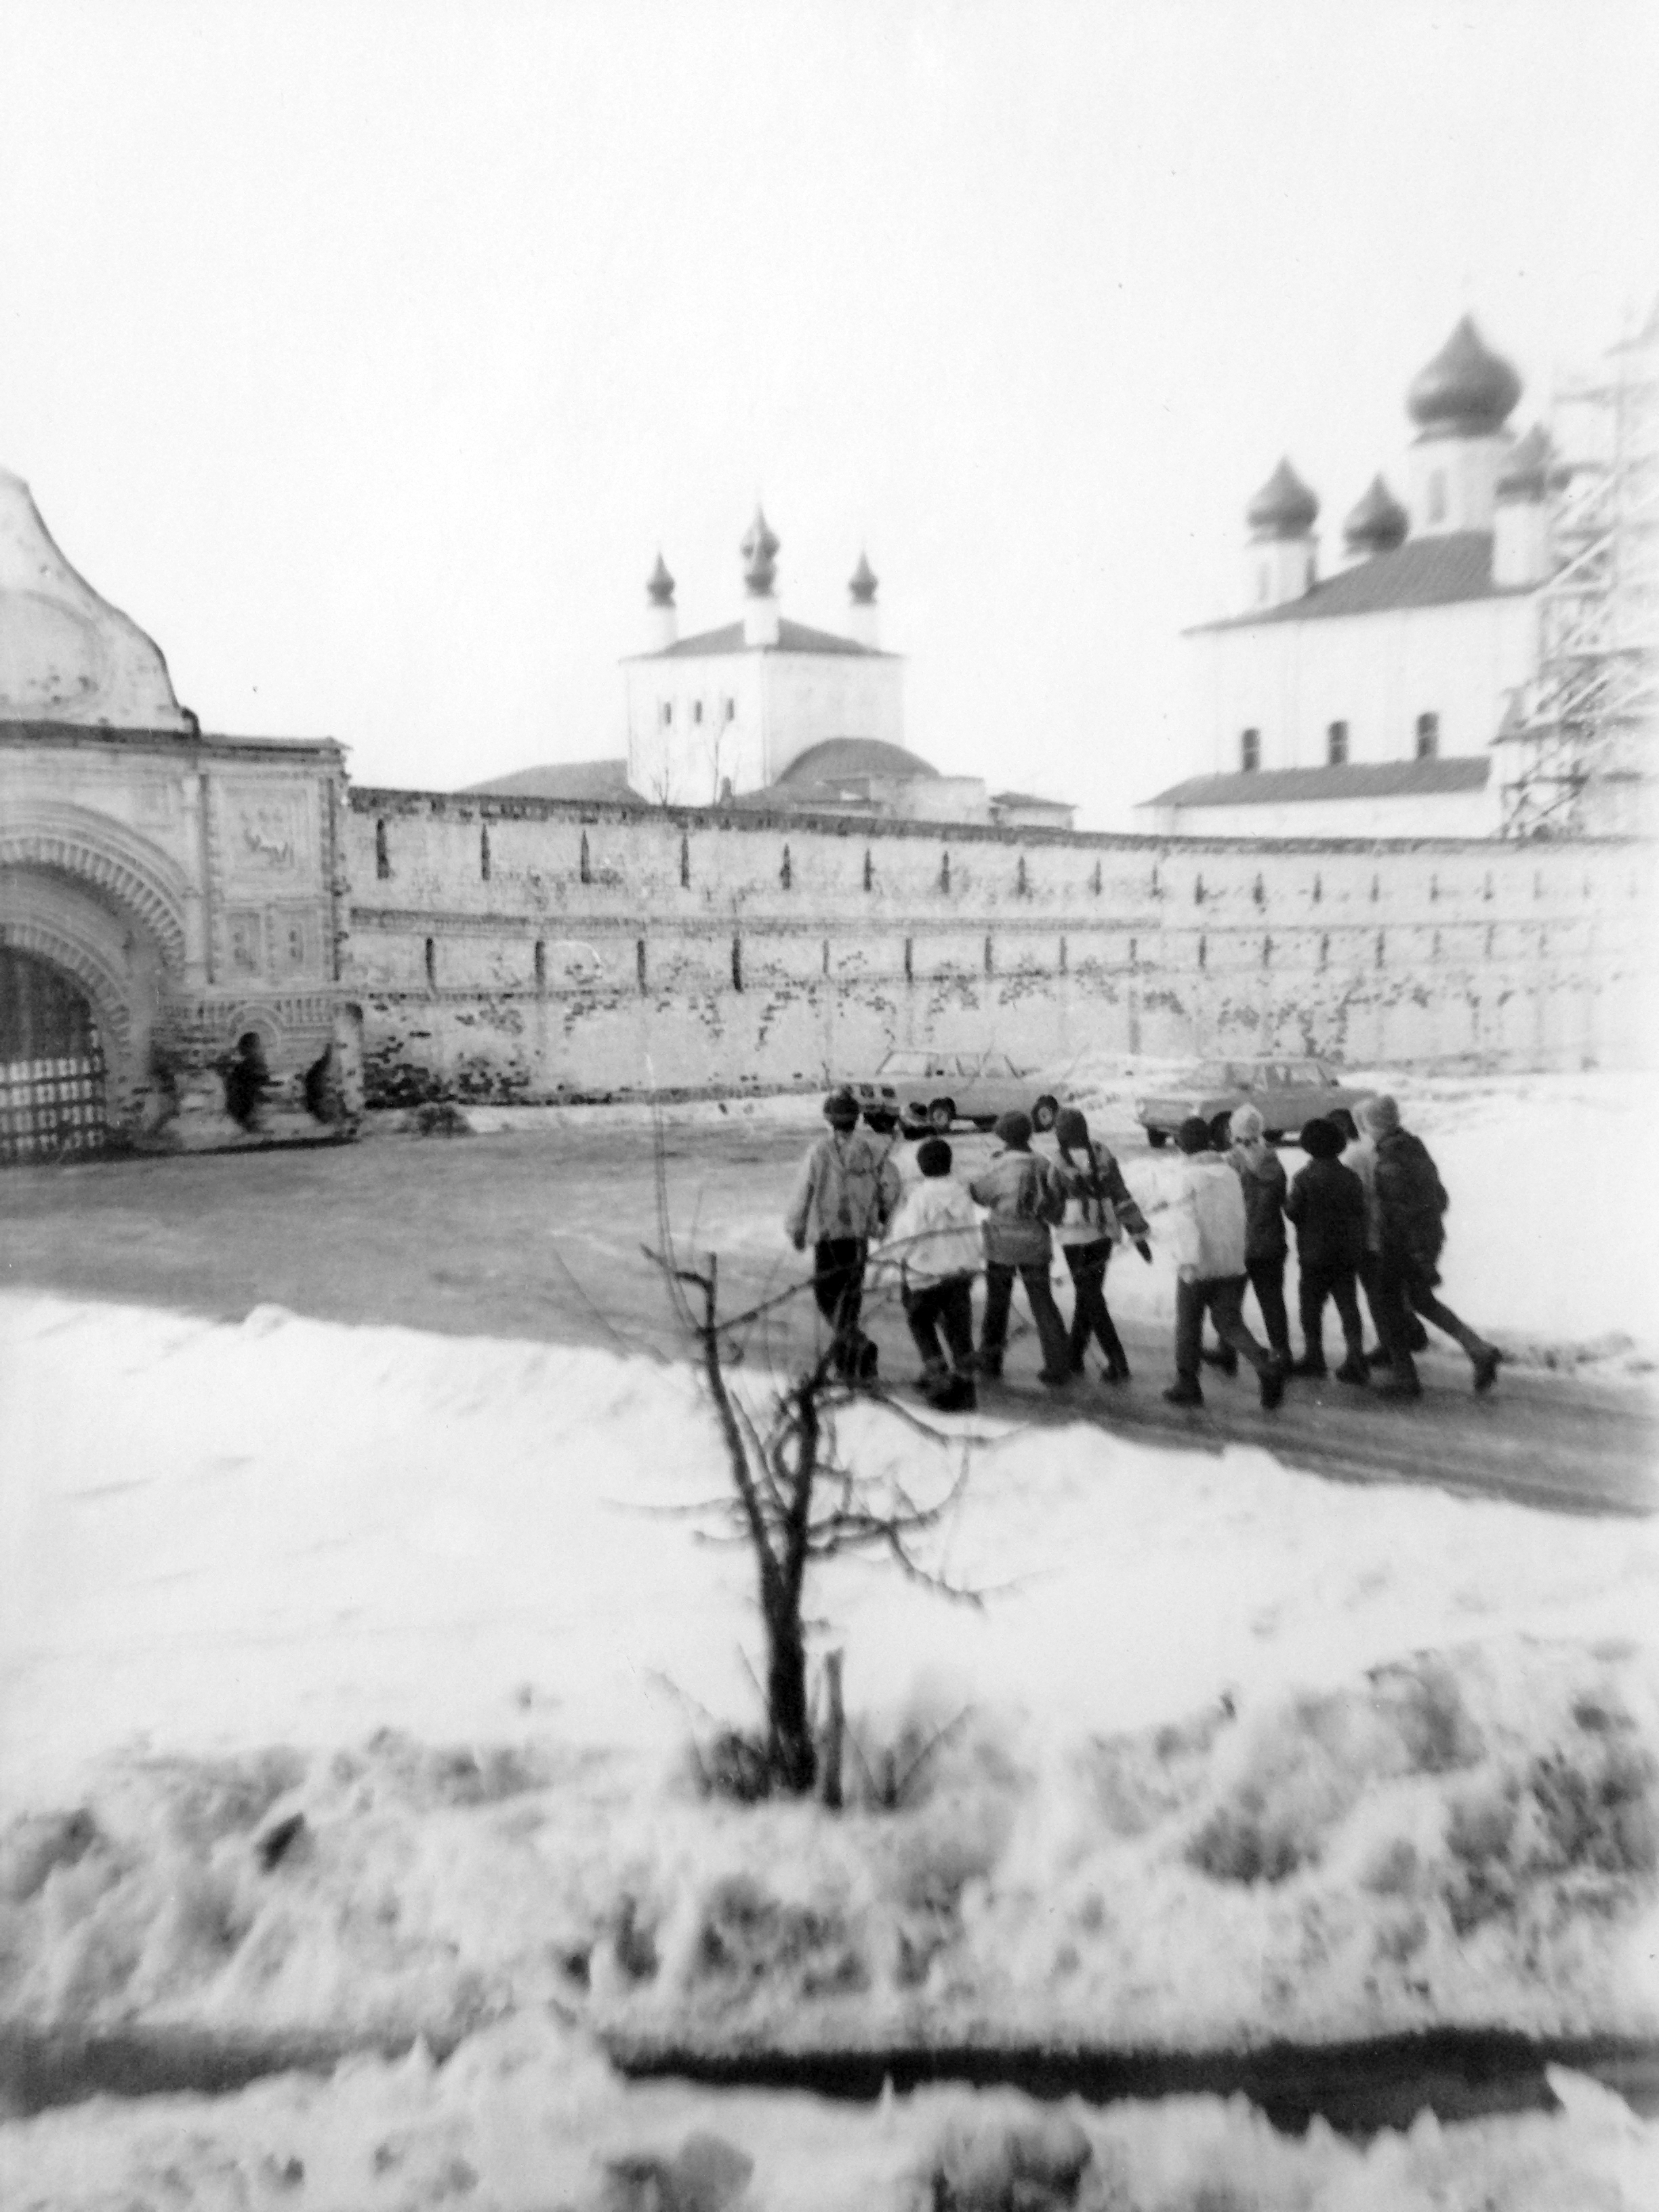 Переславль-Залесский. Весна 1980